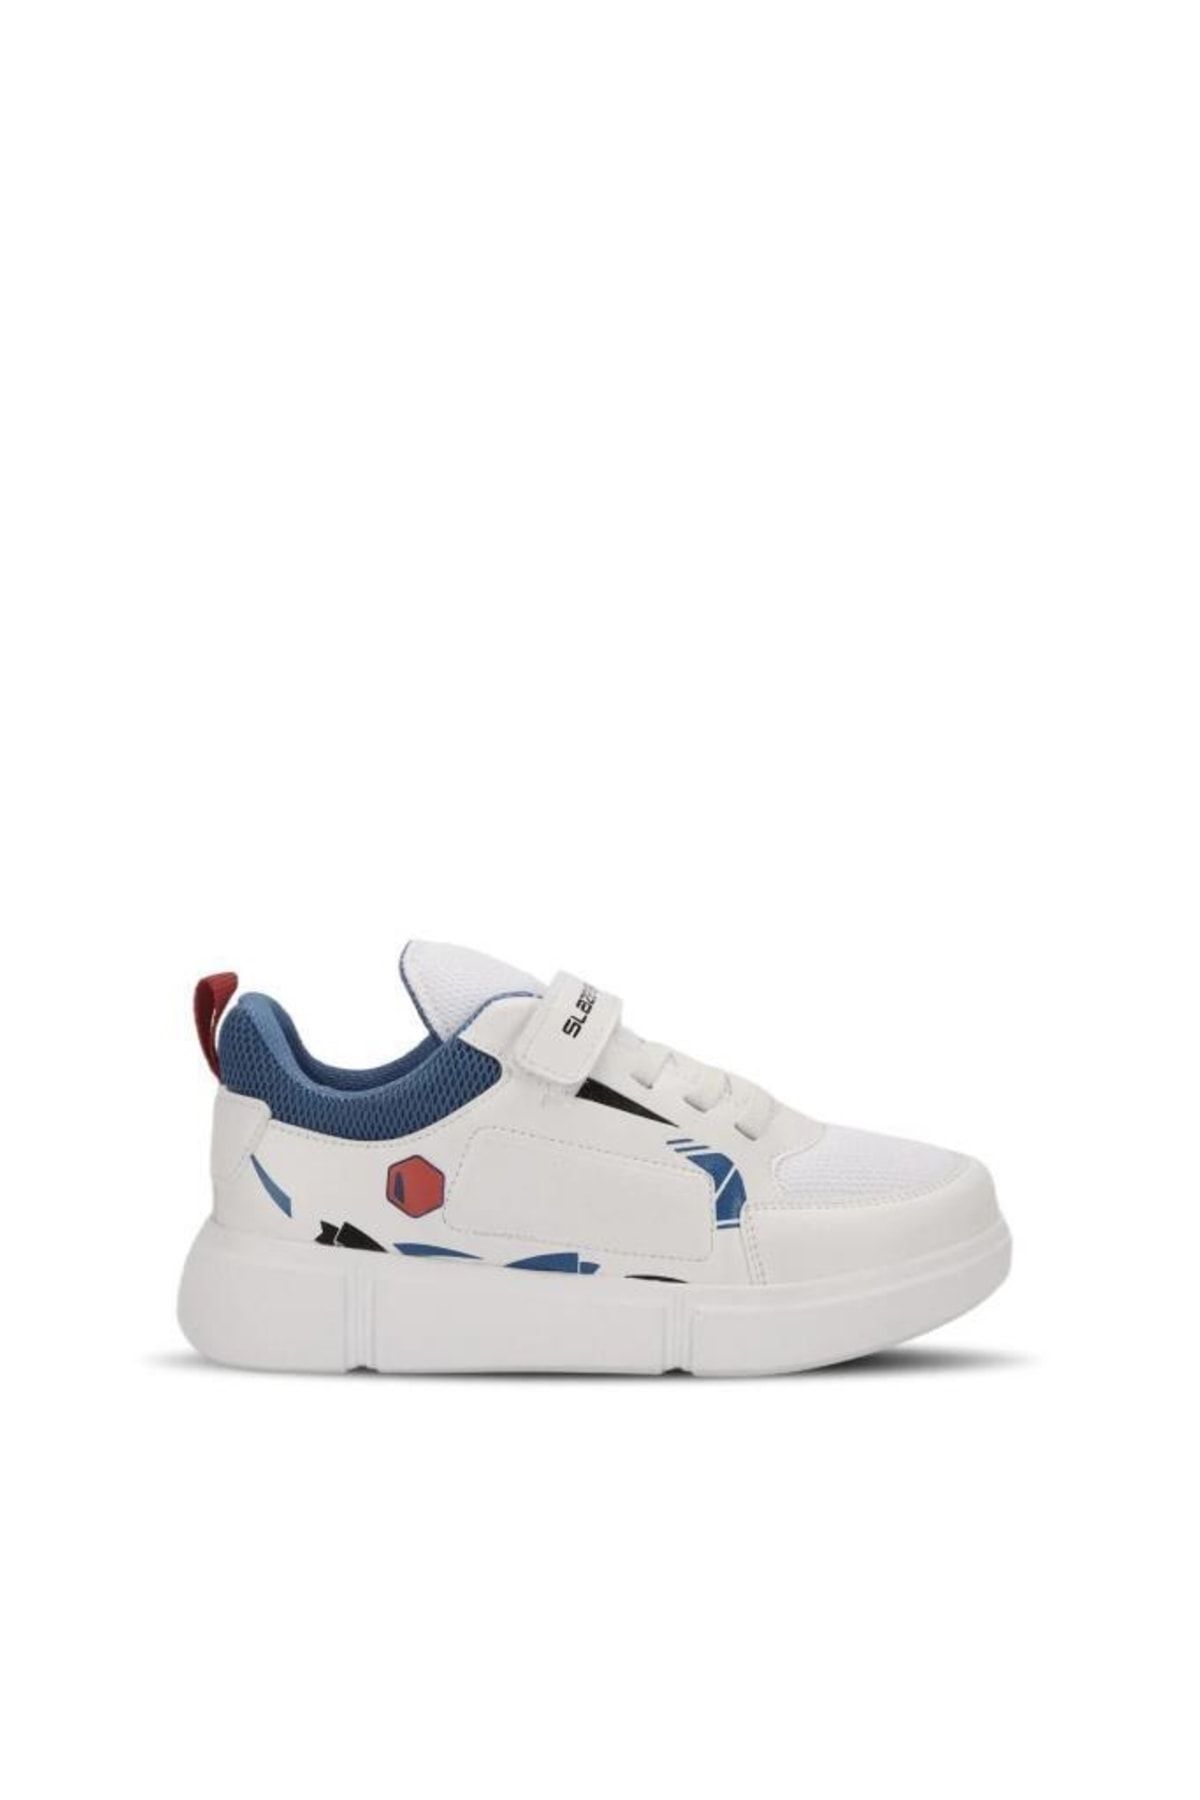 Slazenger Kepa Sneaker Unisex Çocuk Ayakkabı Beyaz / Saks Mavi SA13LP019-033